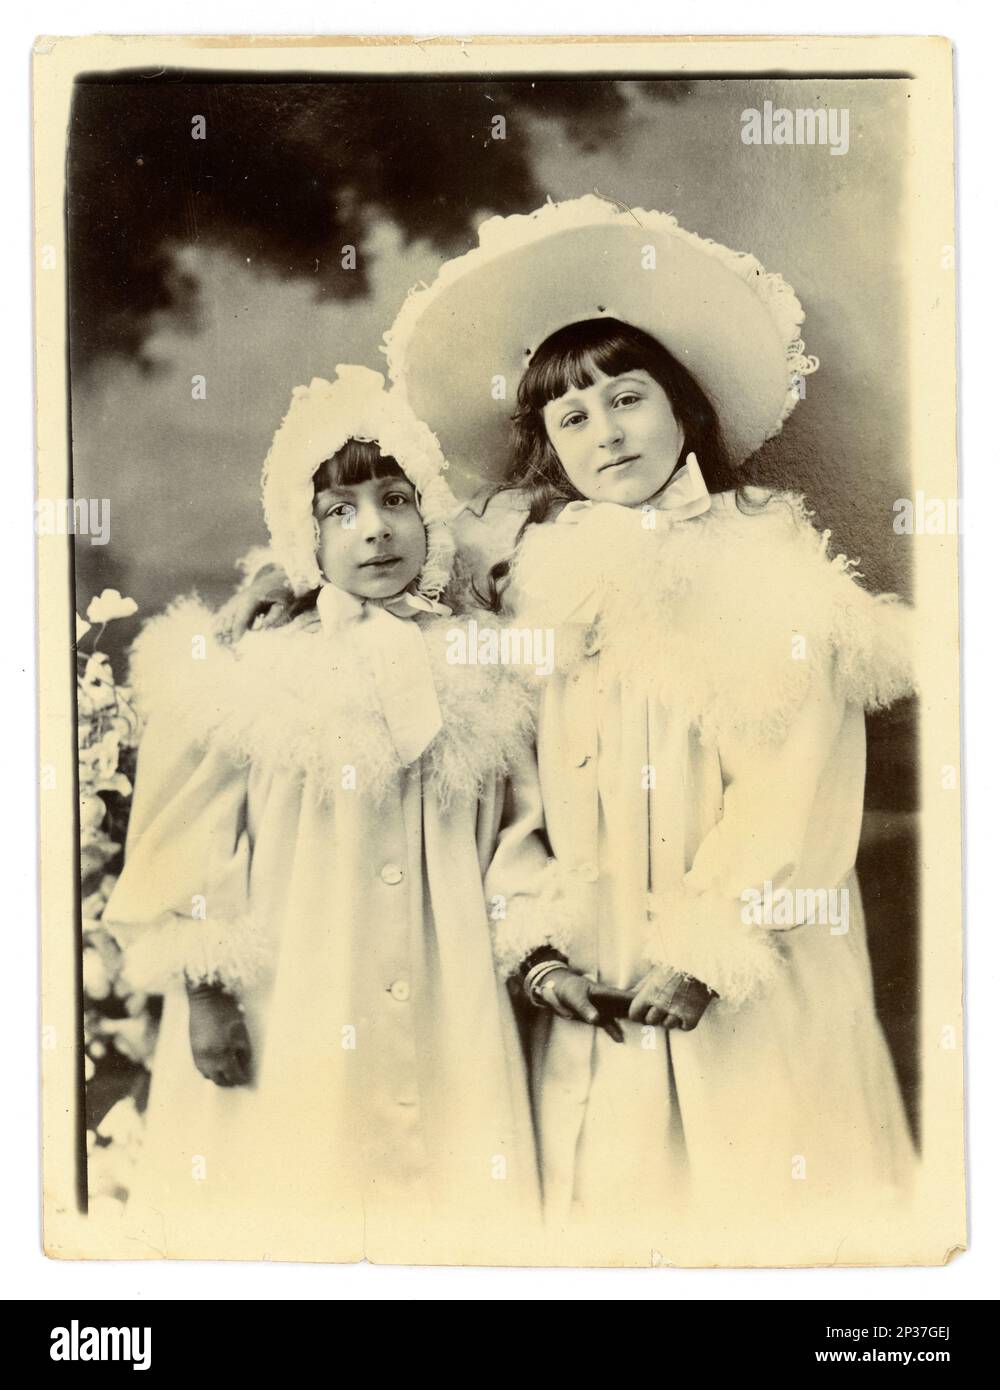 Photographie victorienne originale de 2 jeunes filles souriantes, frères et sœurs, en manteaux blancs garnis de plumes d'autruche, chapeau et bonnet assortis, portant des gants. Vers 1898, région de Worcester, Royaume-Uni Banque D'Images